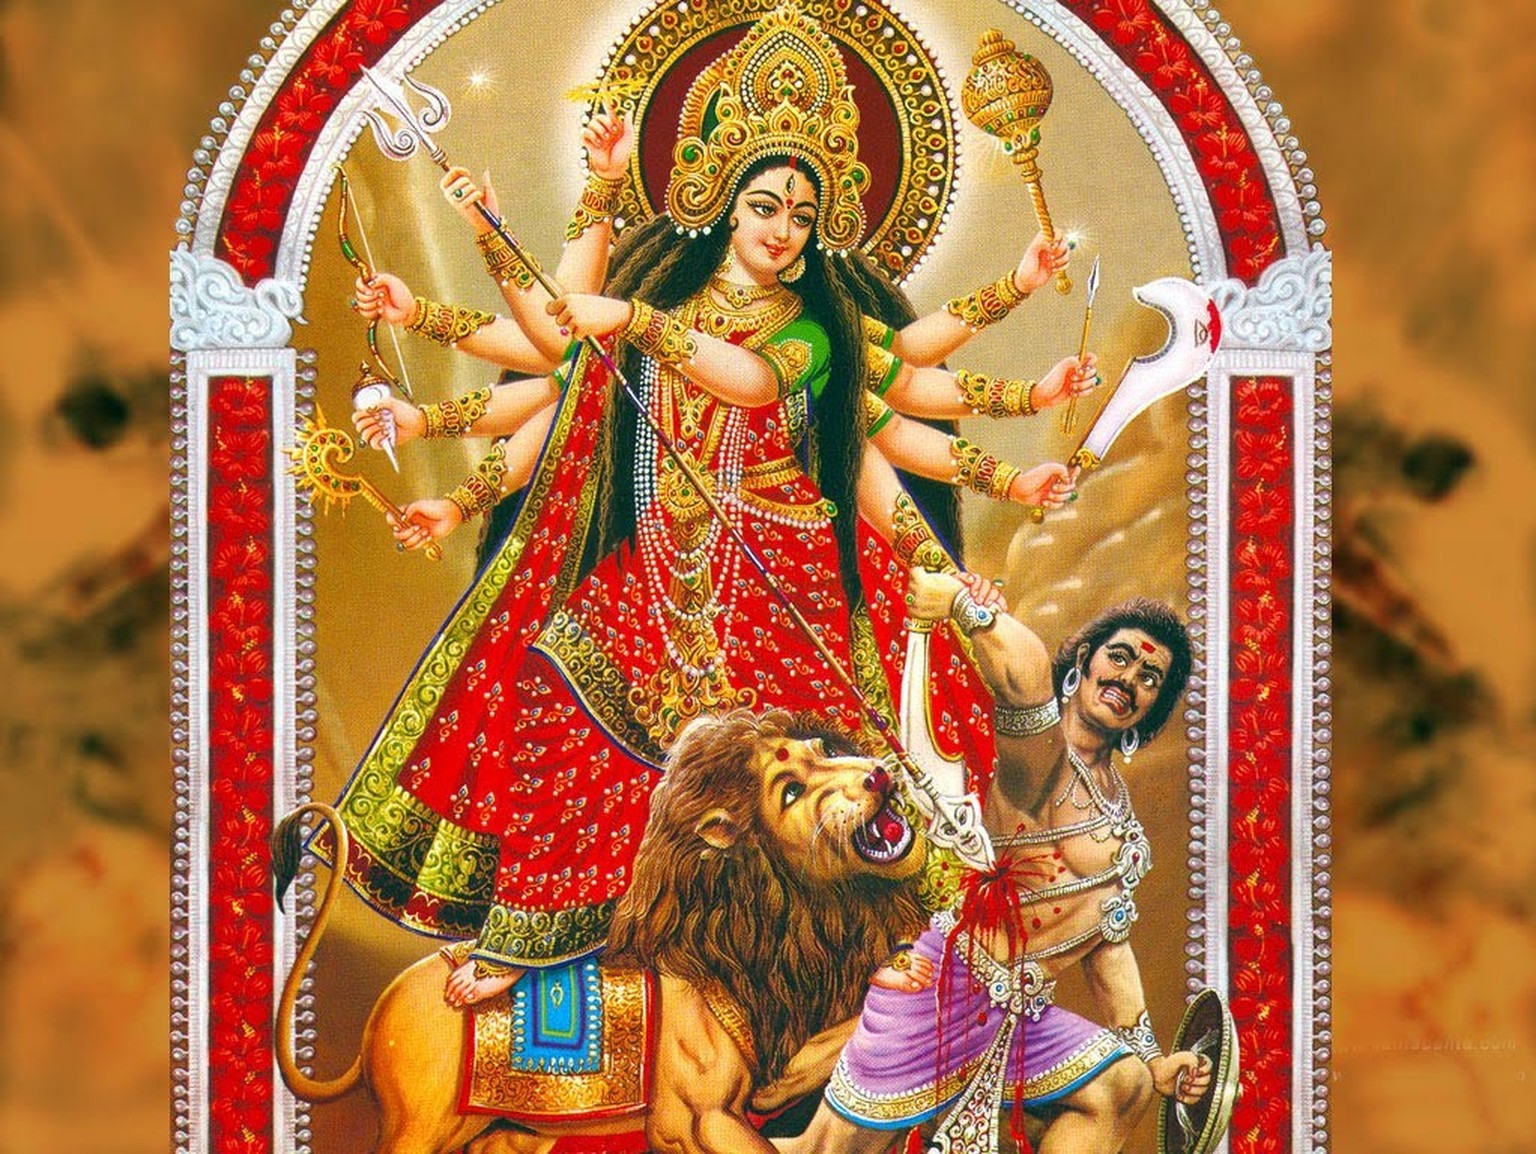 Phoolan Devi identifizierte sich mit der Göttin Durga, der Schutzgöttin der Unterdrückten. Sie symbolisiert die weibliche Urkraft des Universums.